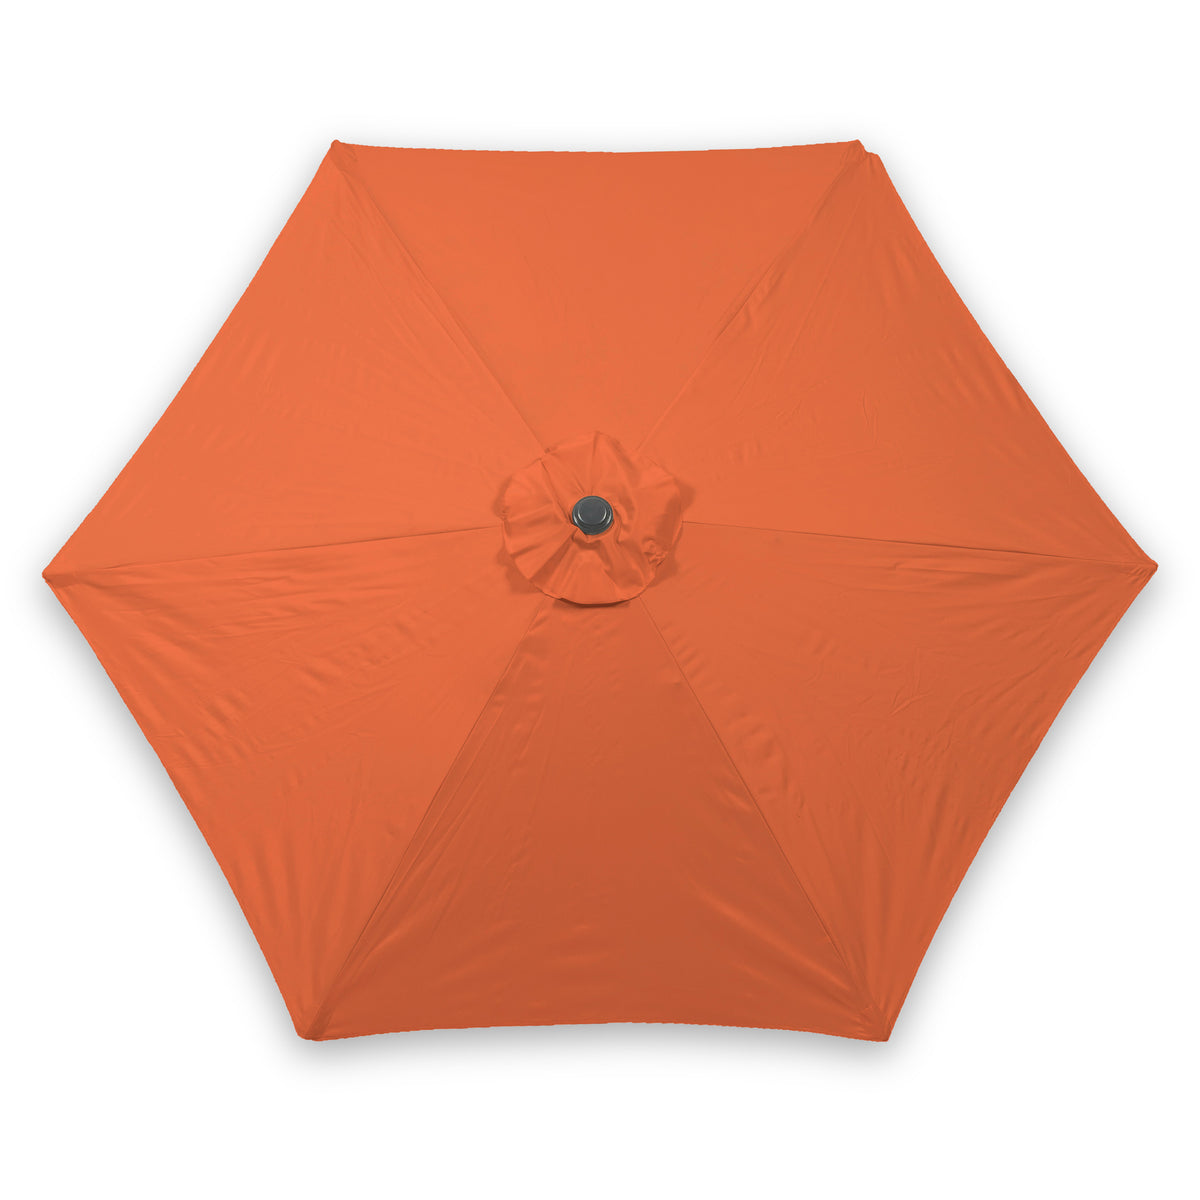 Orange 2.5m Garden Umbrella with Grey Aluminium Pole 